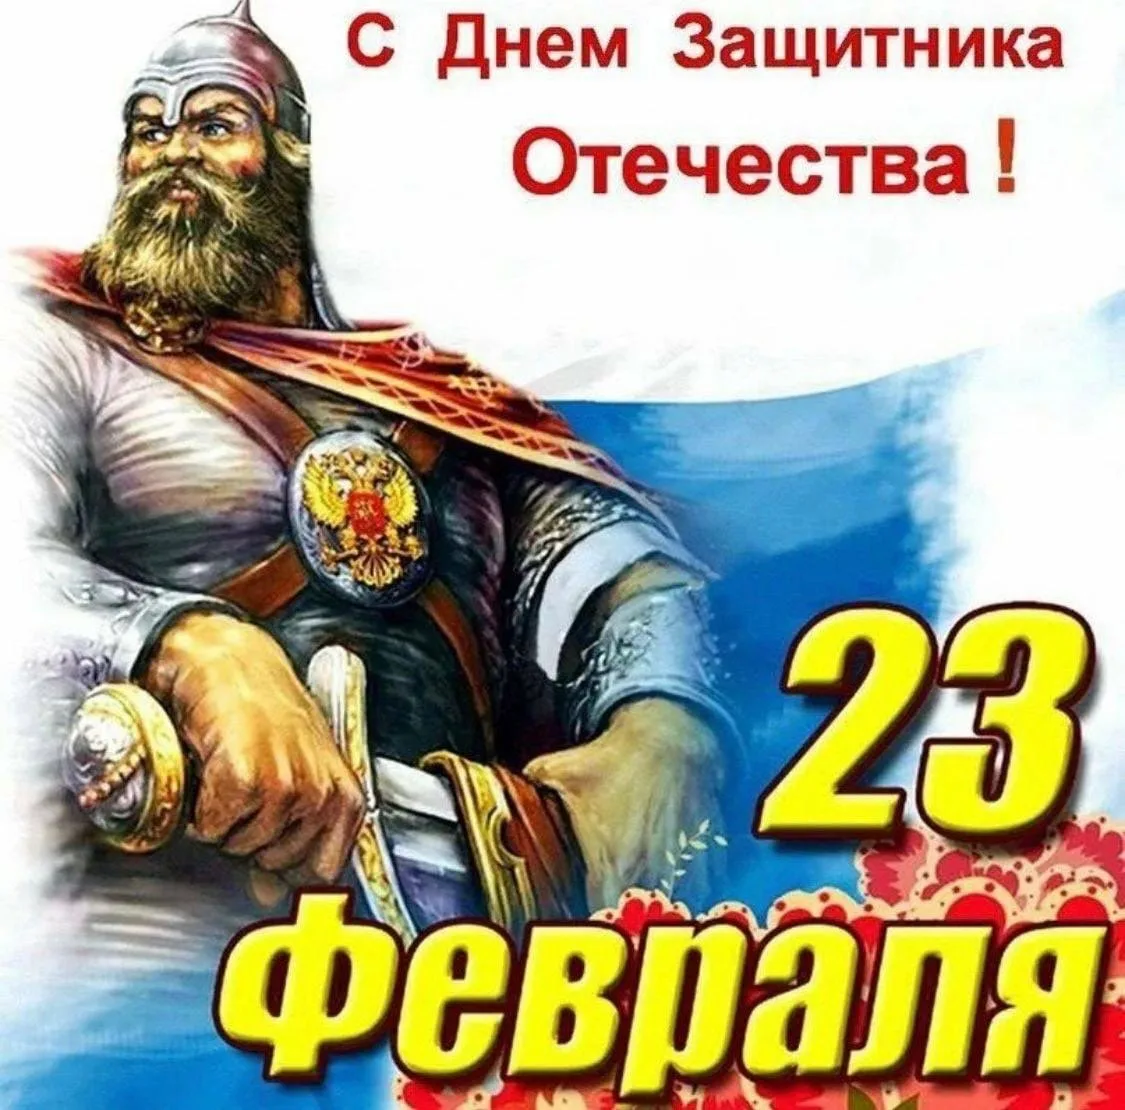 Православное поздравление с 23 февраля мужчинам. С днем защитника. С днем защитницы Отечества. С дне защитника Отечества. С днем защитниаотечества.